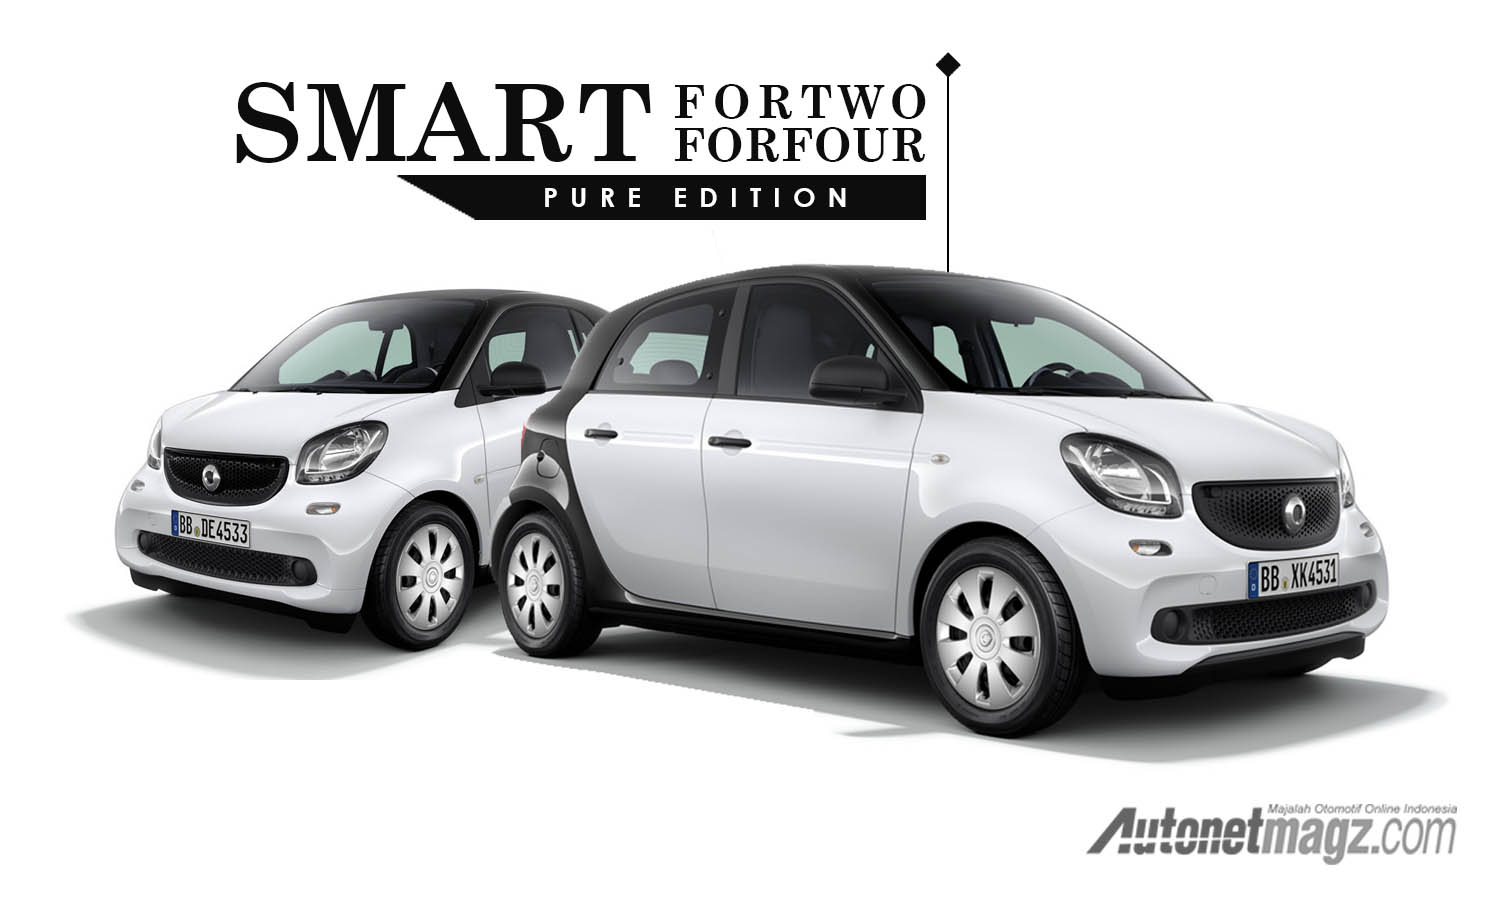 Berita, cover smart pure edition paling murah di inggris: Smart ForTwo Dan ForFour Mendapat Trim Yang Lebih Murah